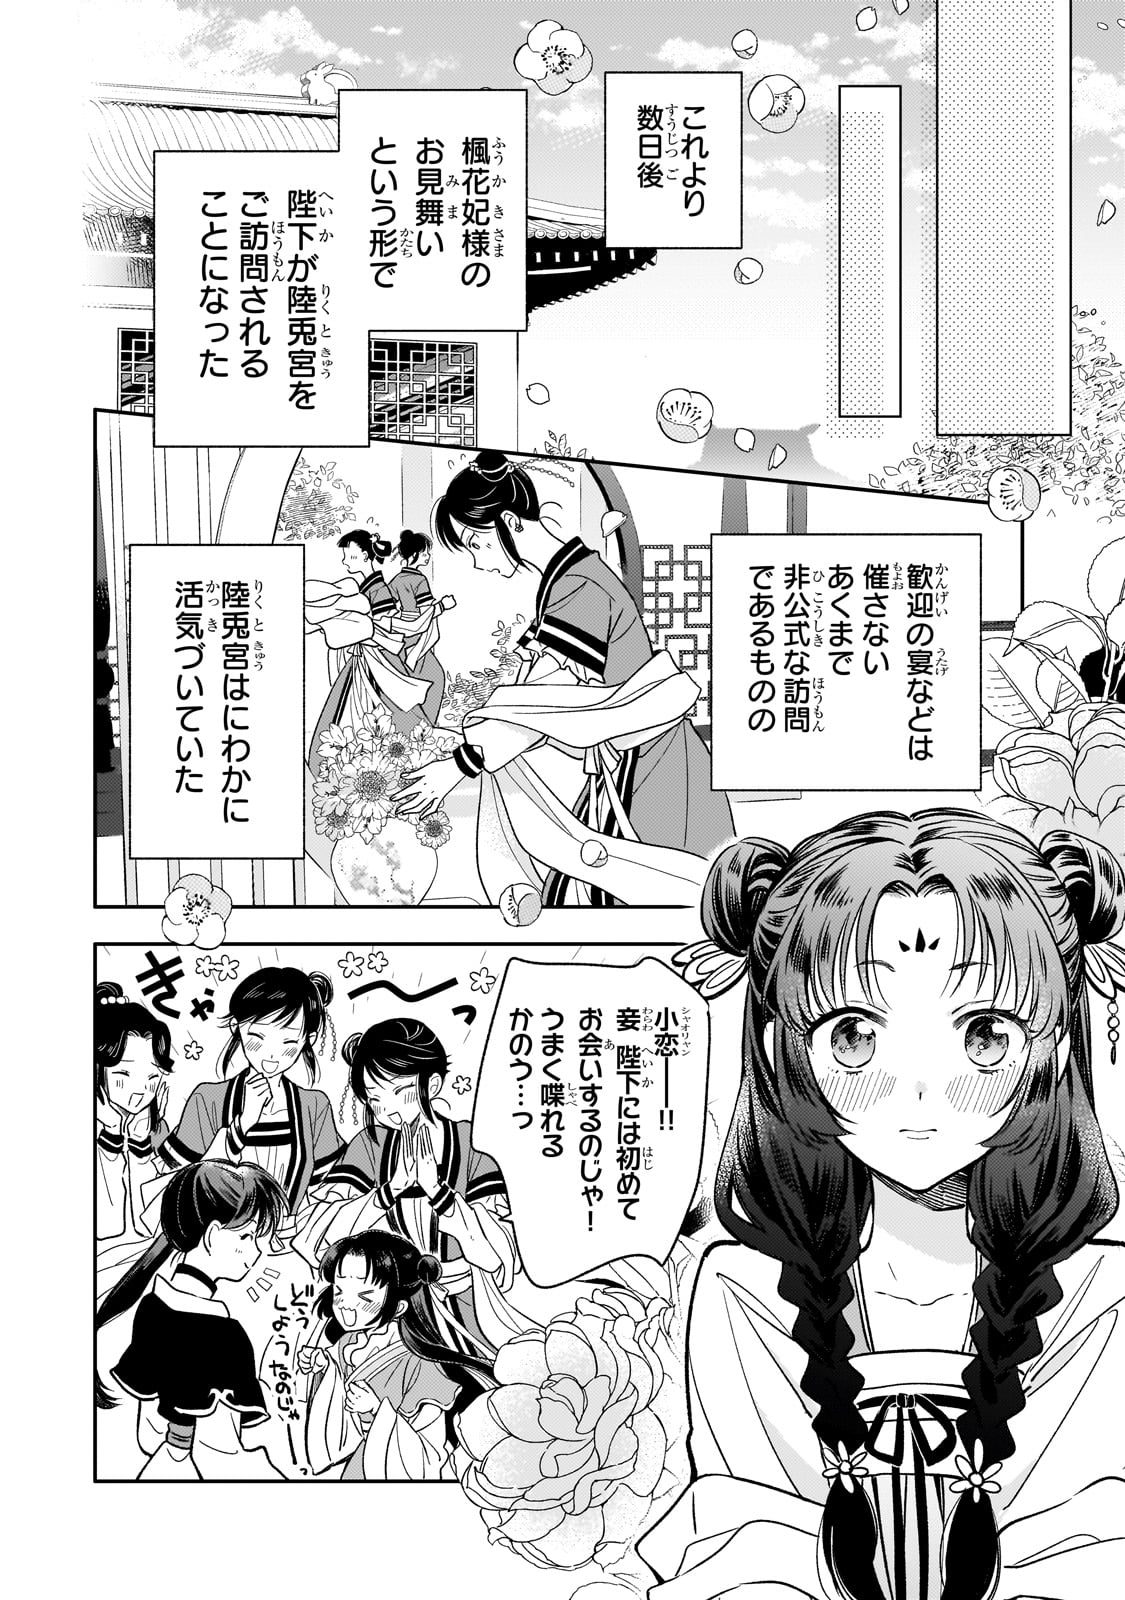 Koukyu no Zatsuyouki - Chapter 27 - Page 2